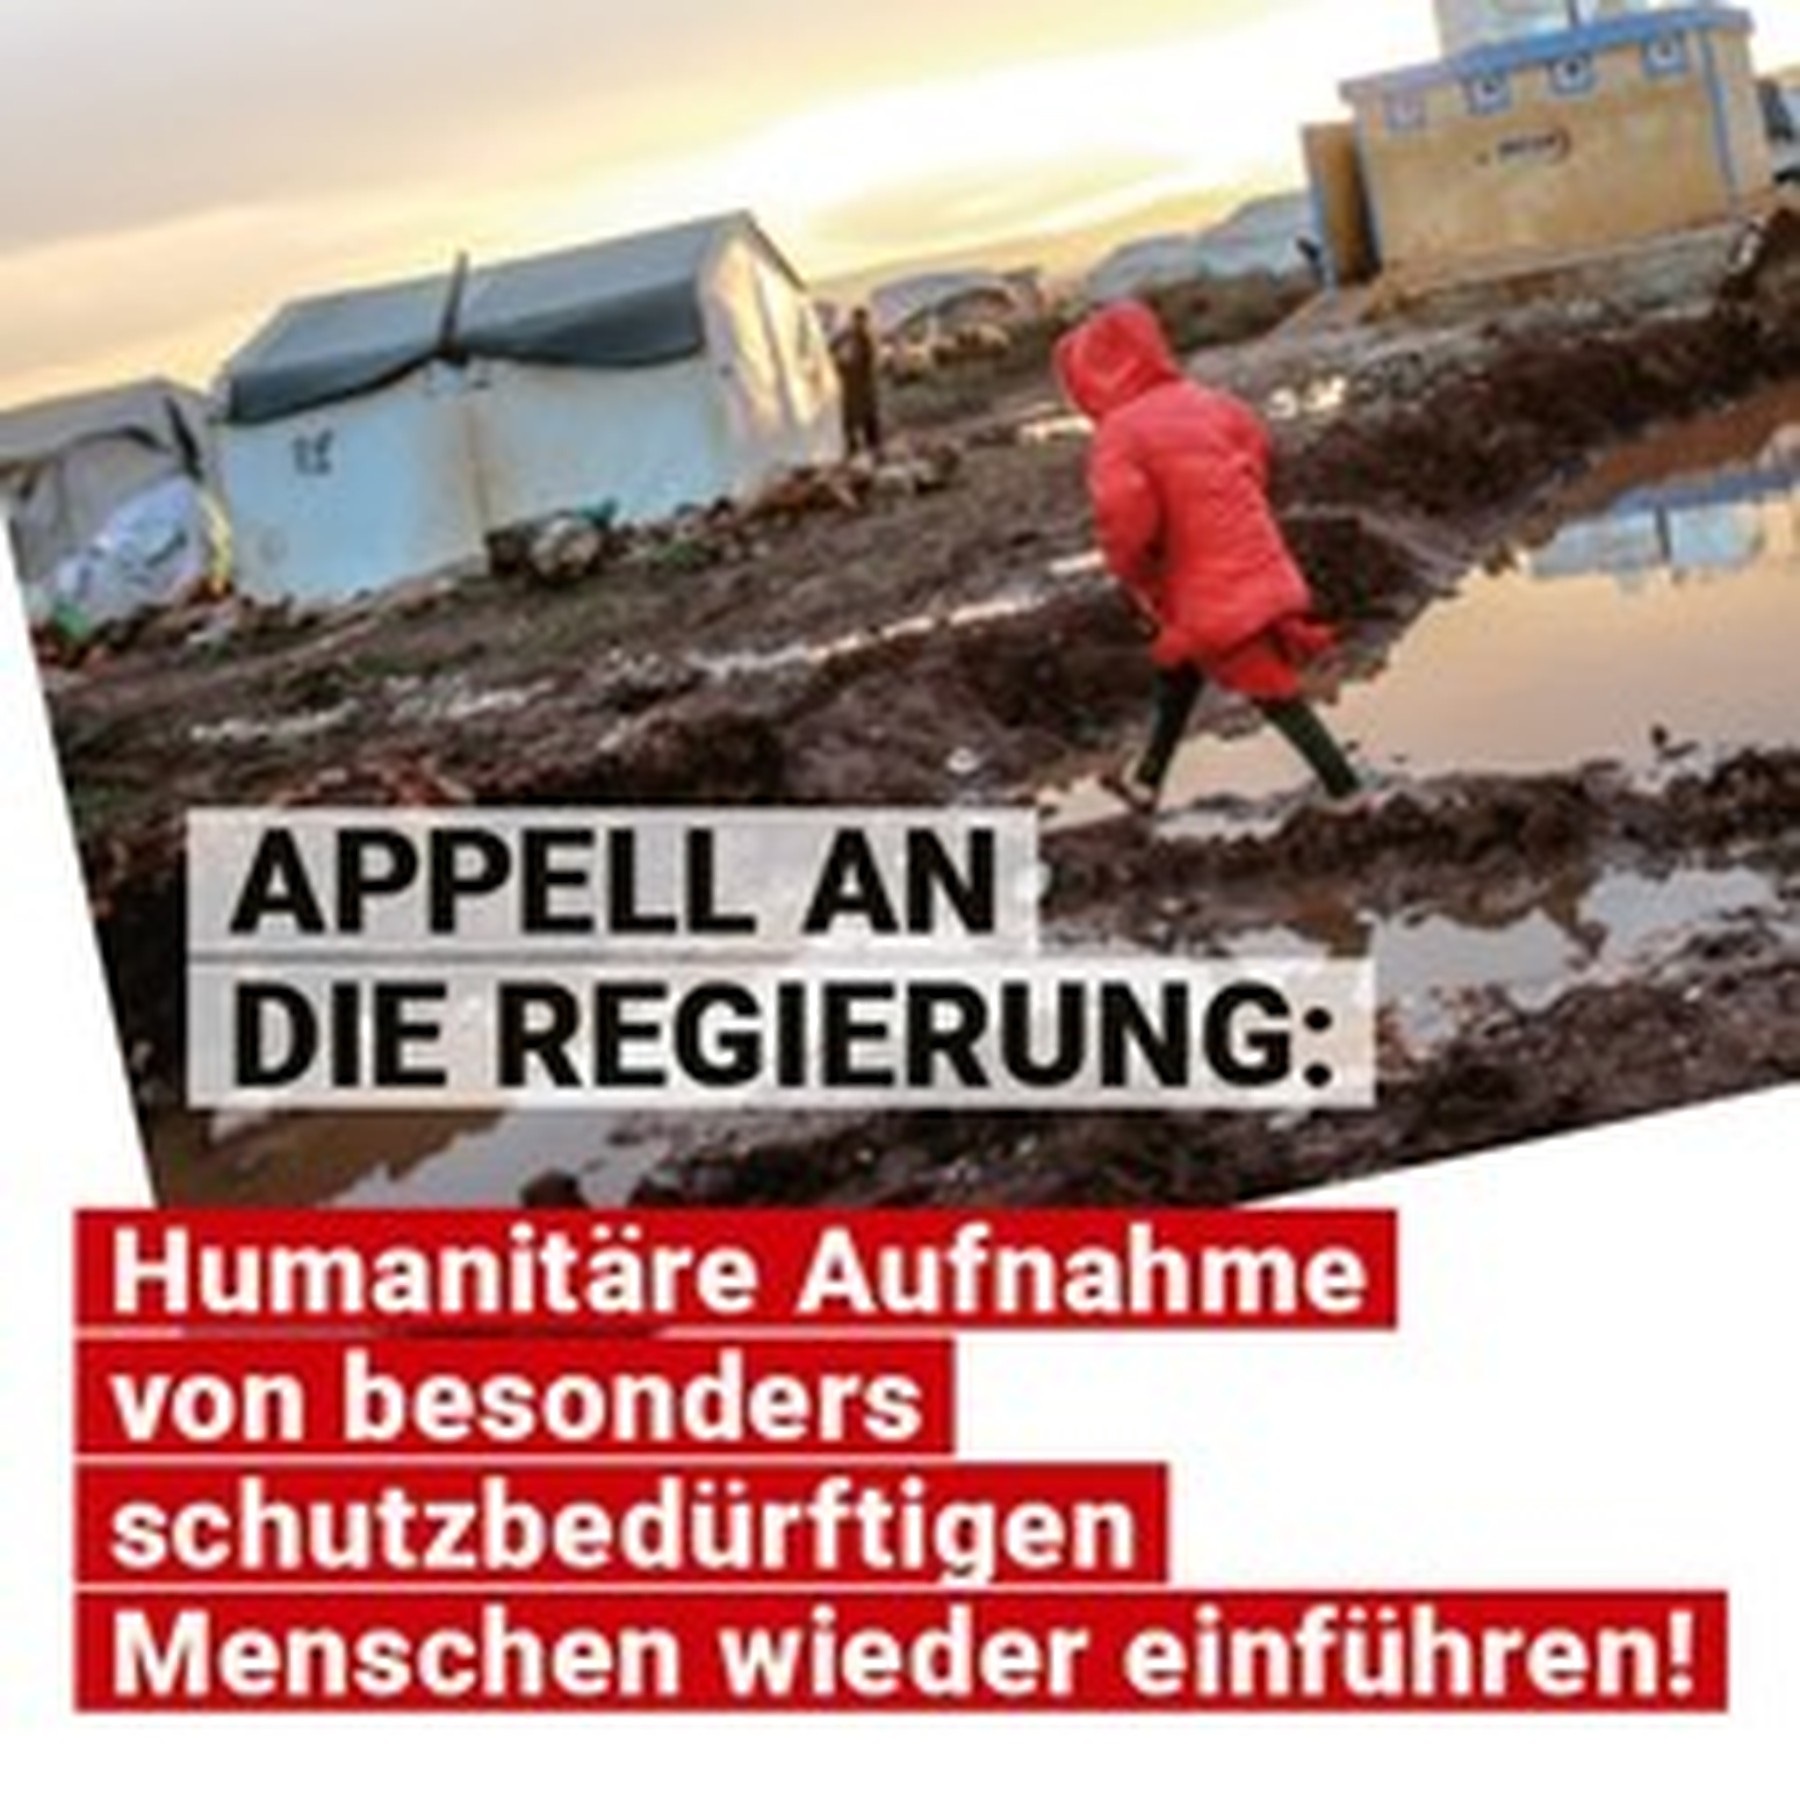 Österreich soll humanitäre Aufnahme wiederbeleben!